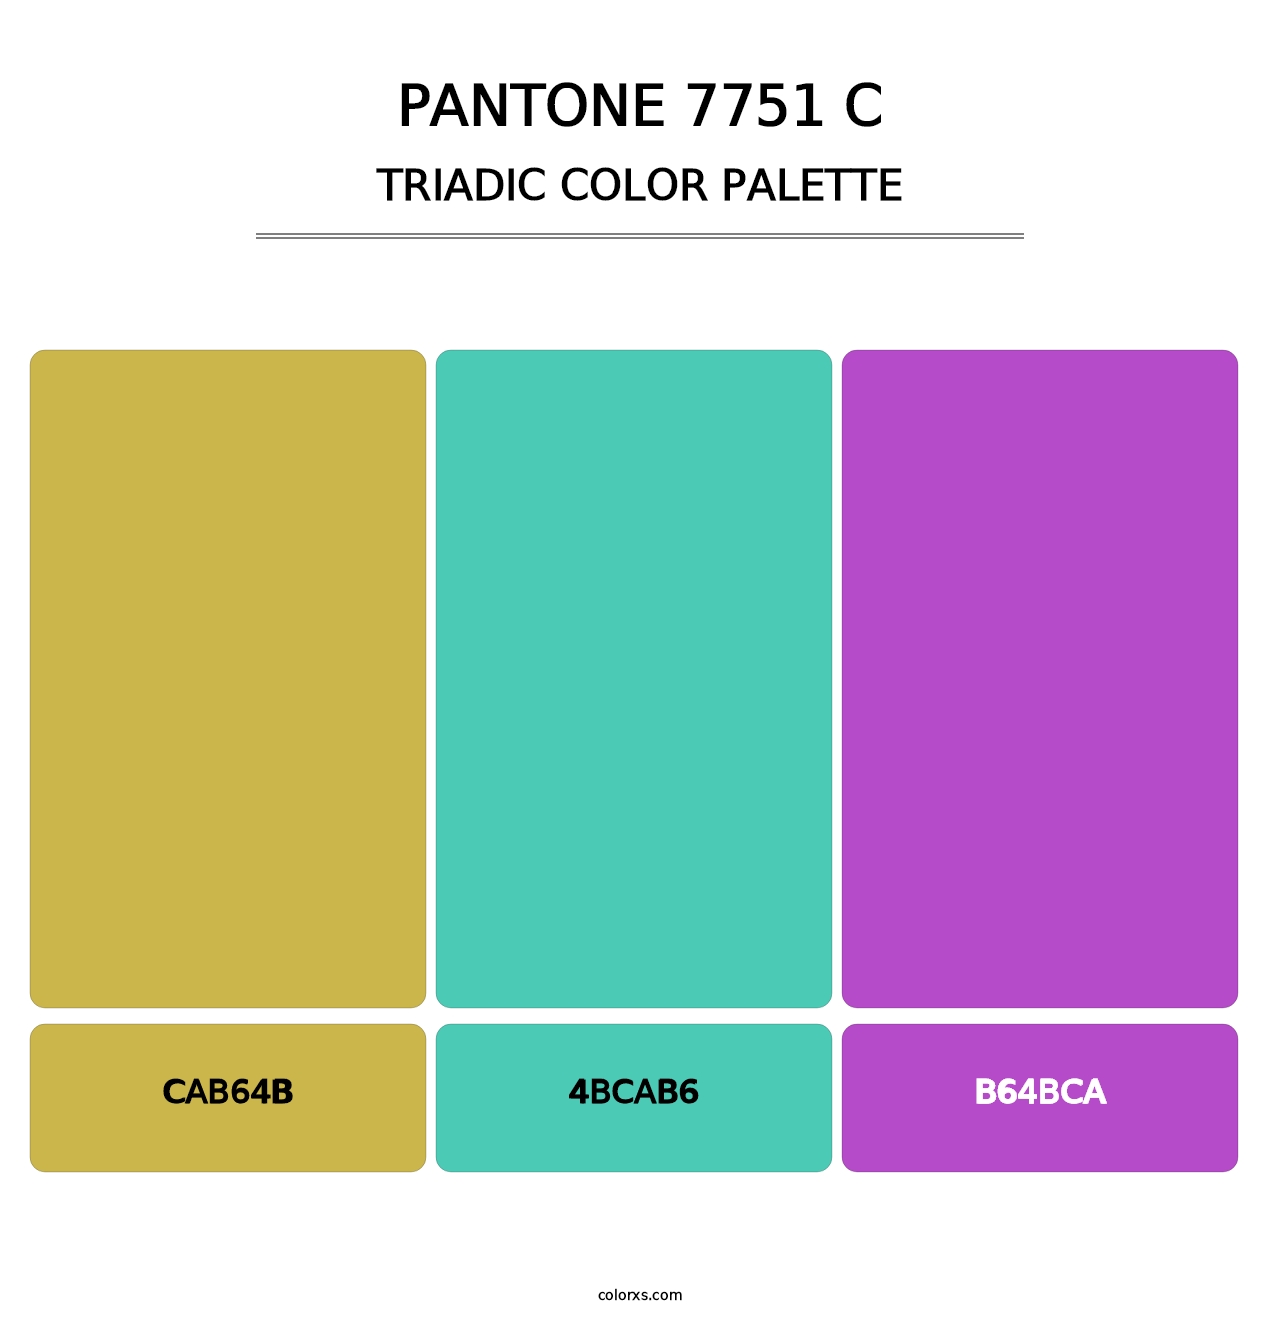 PANTONE 7751 C - Triadic Color Palette